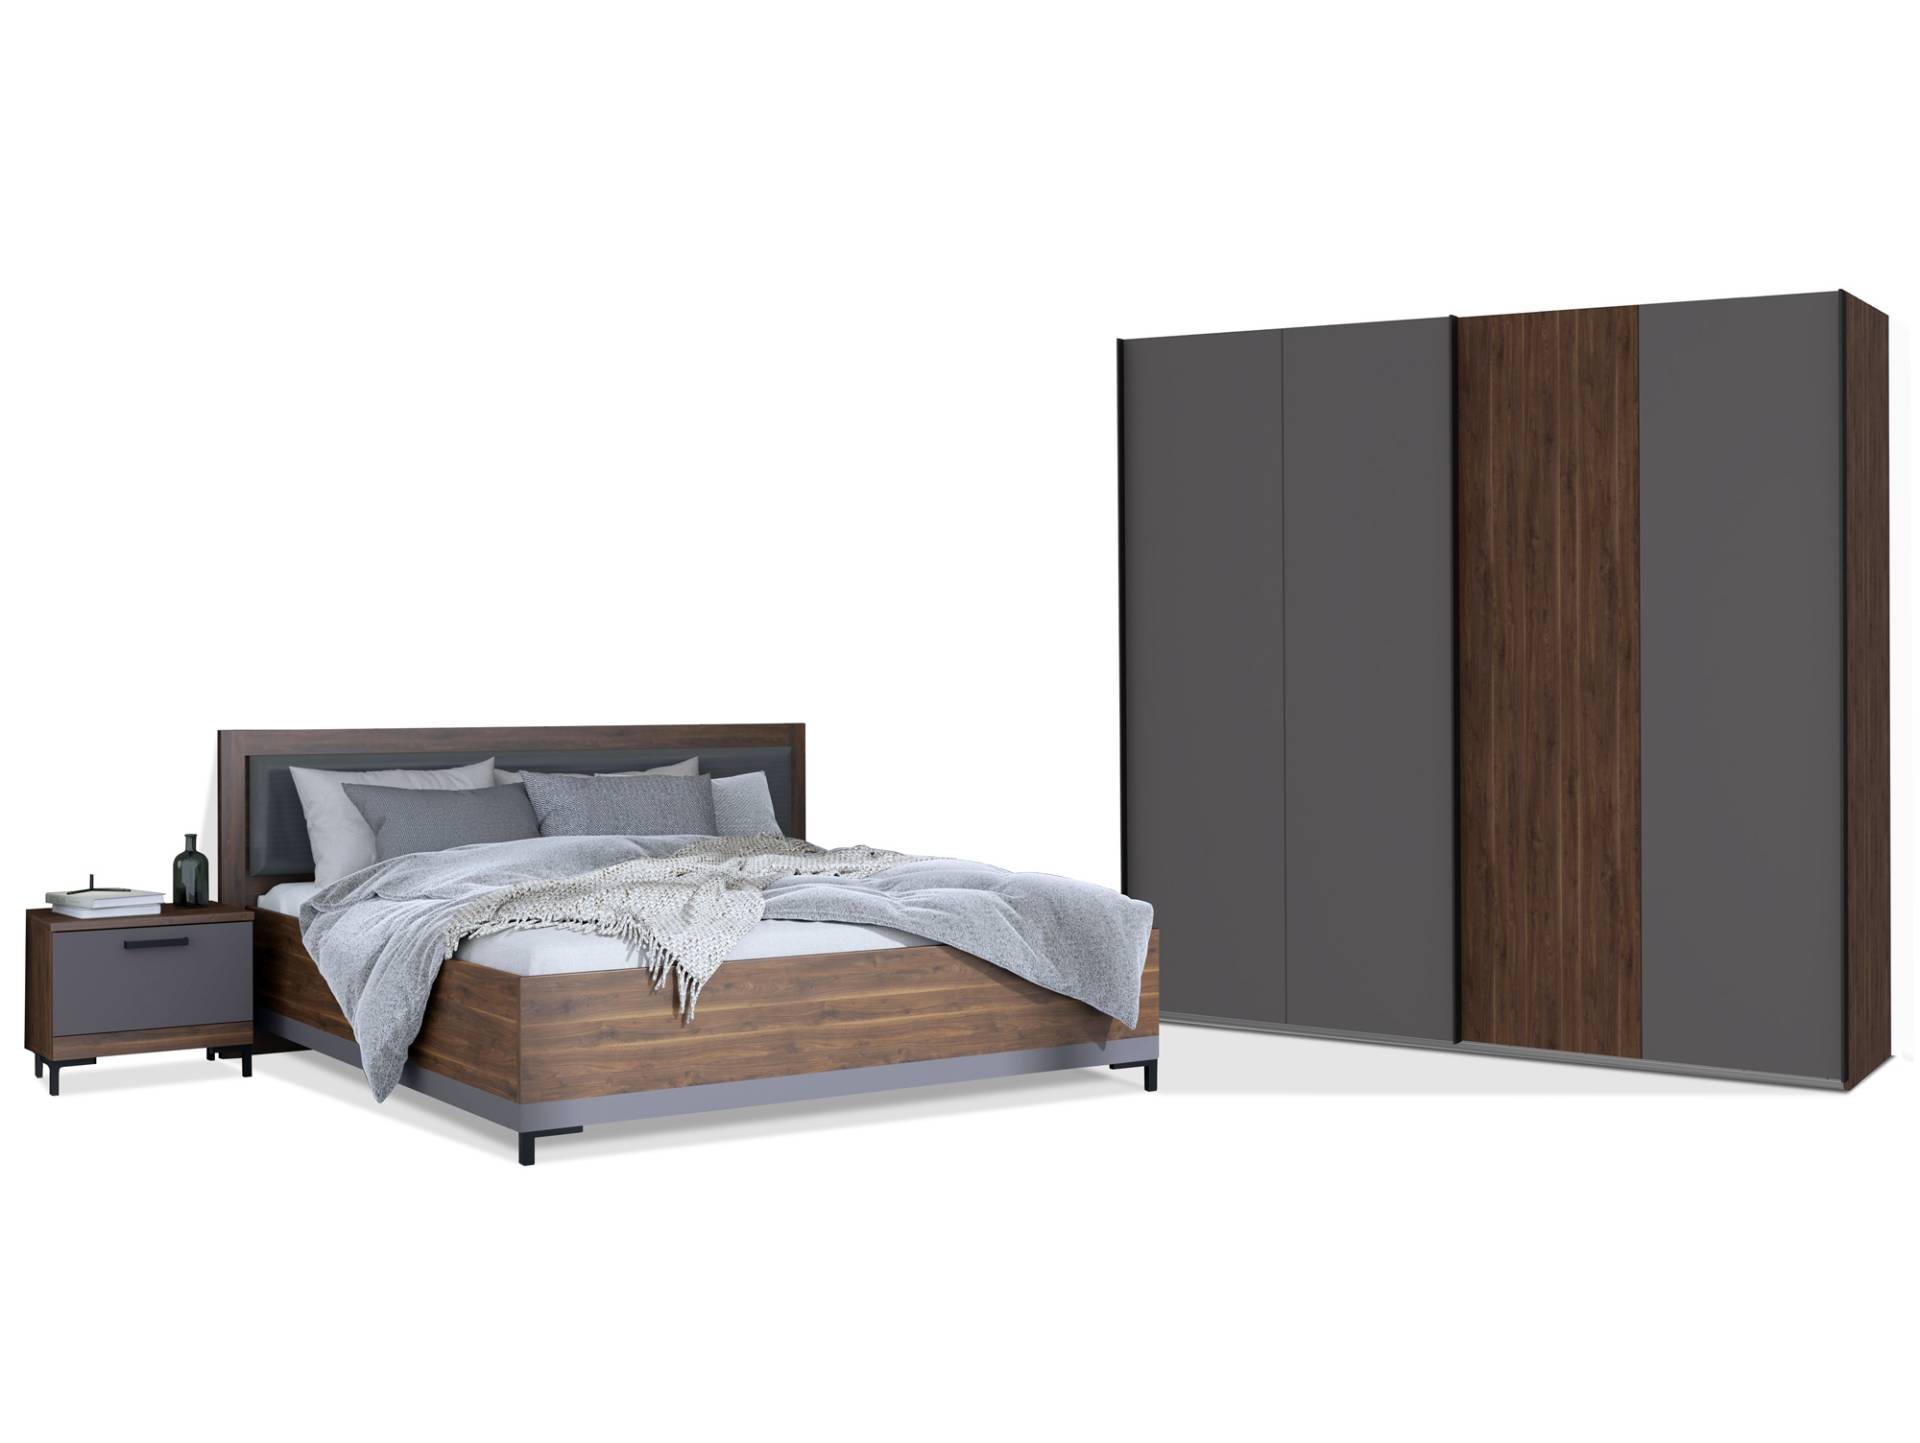 QUERRY Komplettschlafzimmer, Material Dekorspanplatte, walnussfarbig / grau von Möbel-Eins